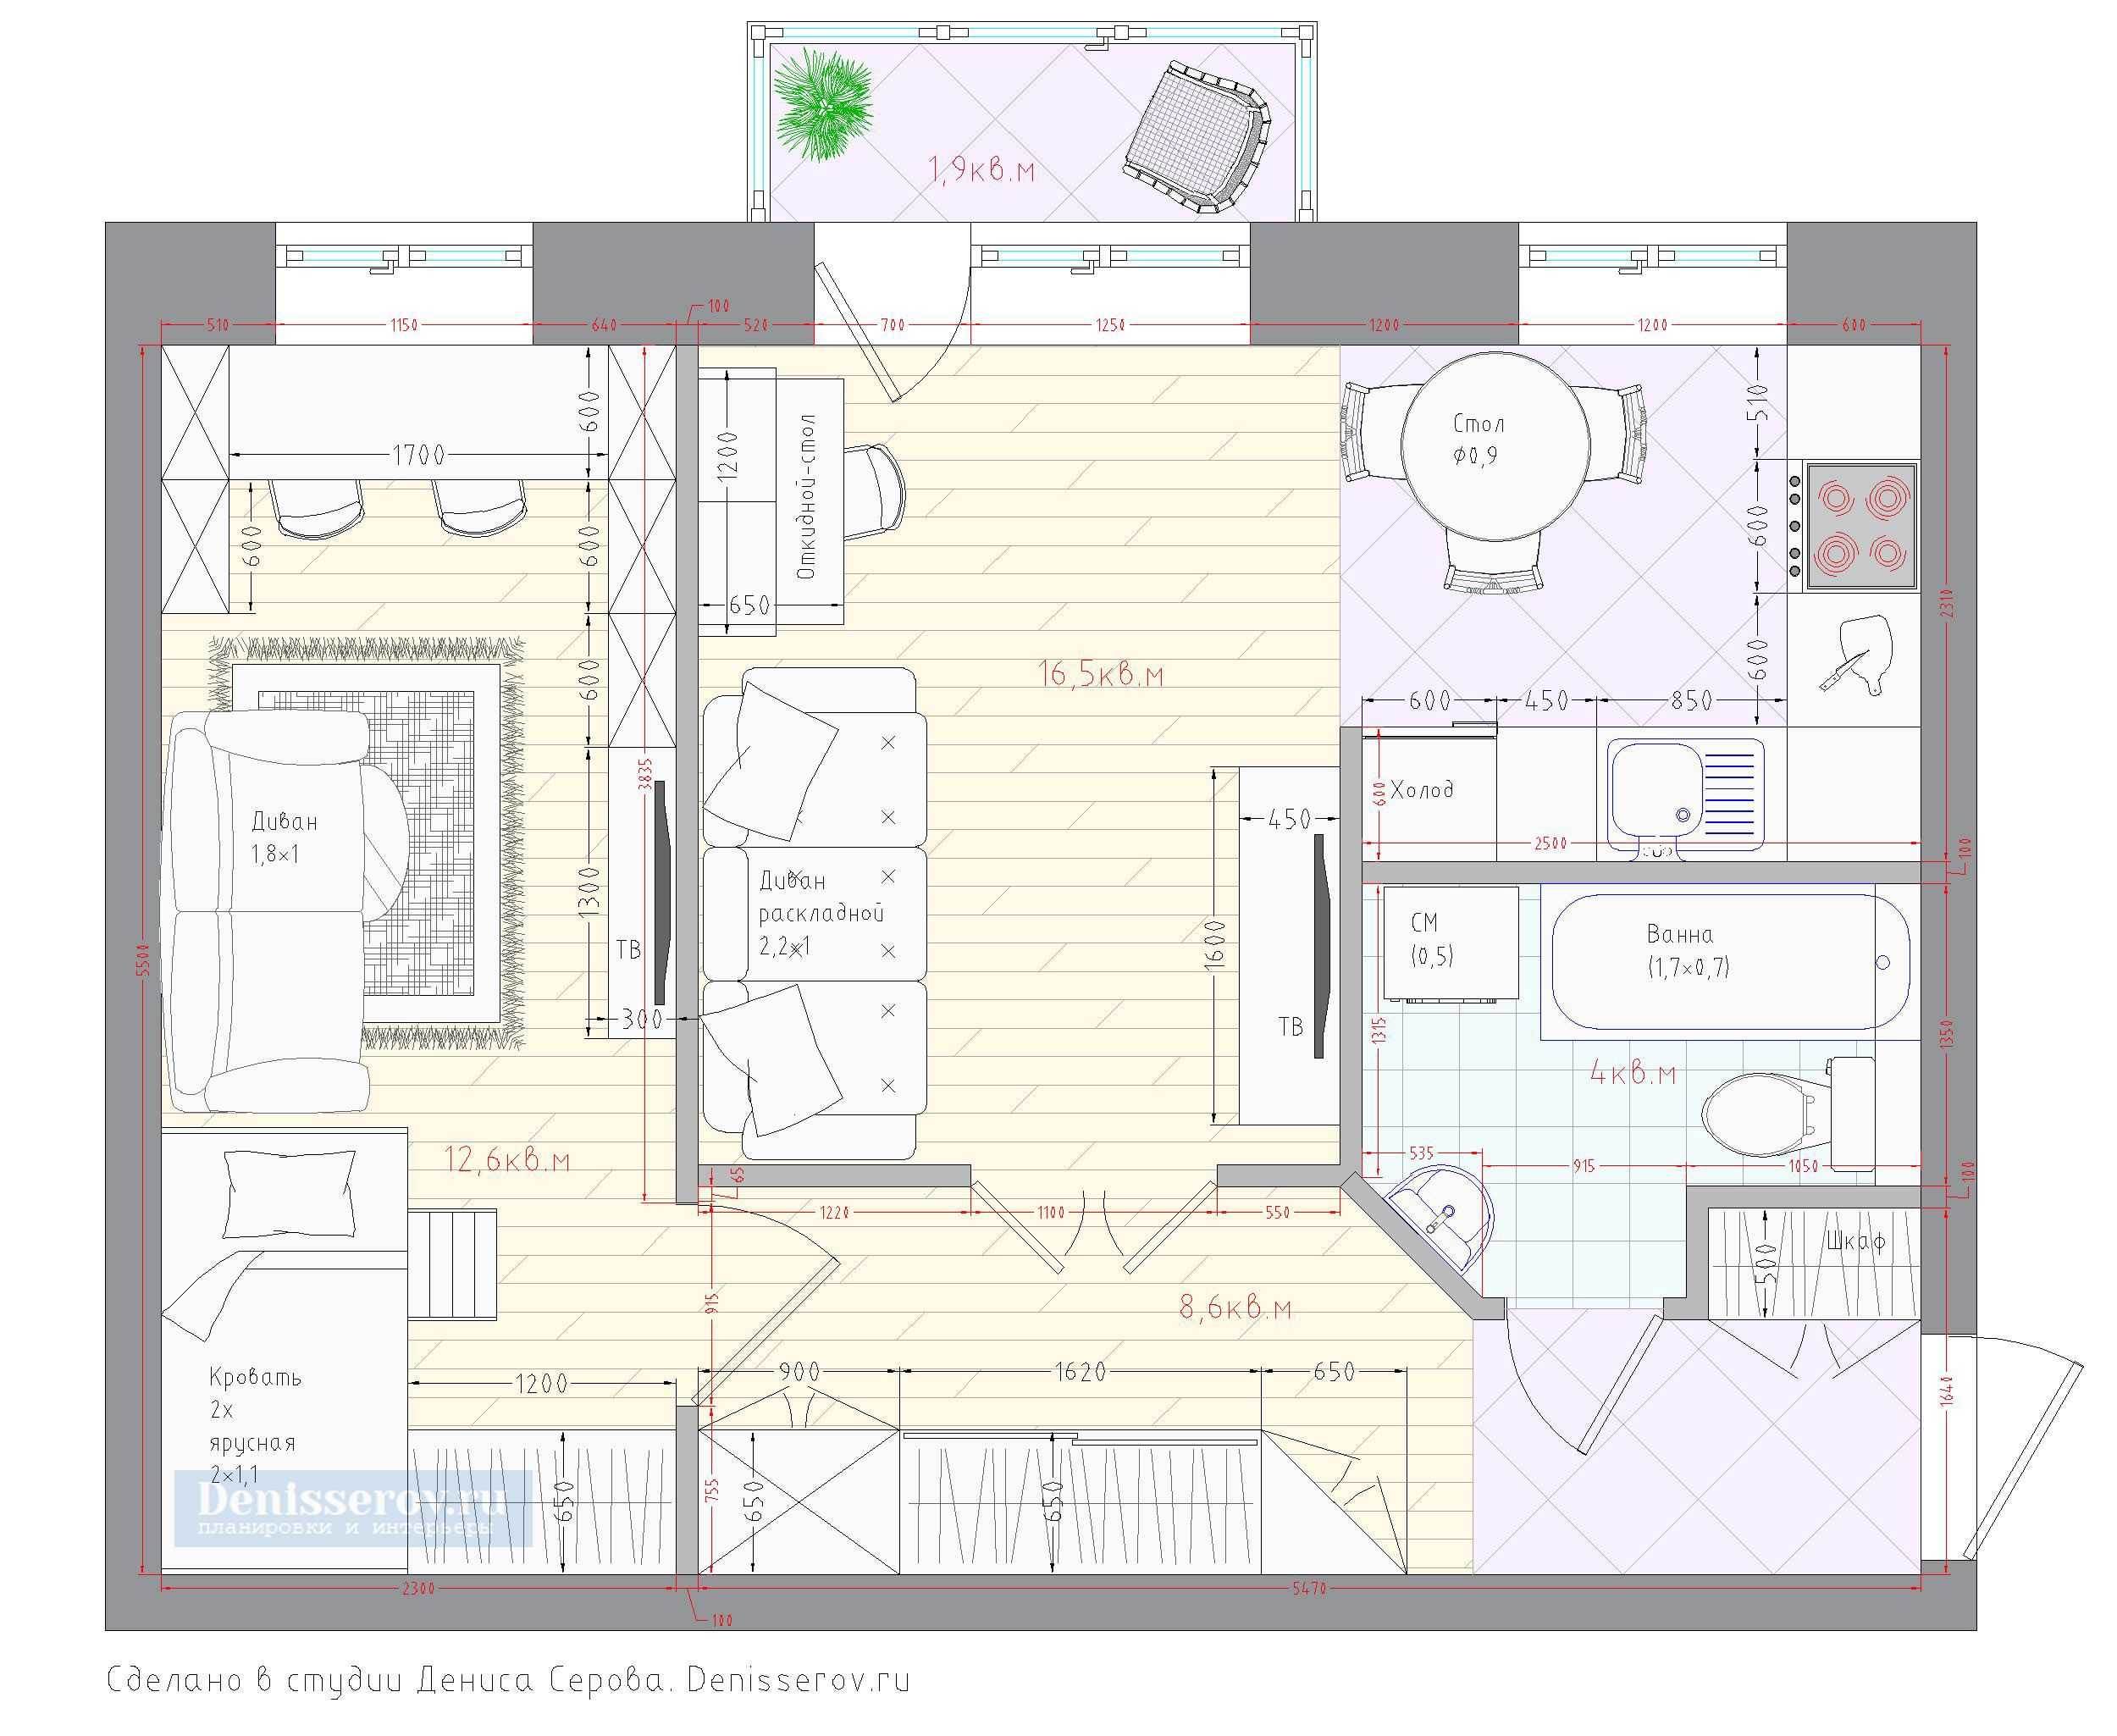 2 комнатная хрущевка планировка  основные характеристики и особенности Дизайн квартиры для разных стилей распашонка, книжка и другие Планировка двухкомнатной хрущевки в зависимости от площади и для разных комнат, а также выбор цвета и декора